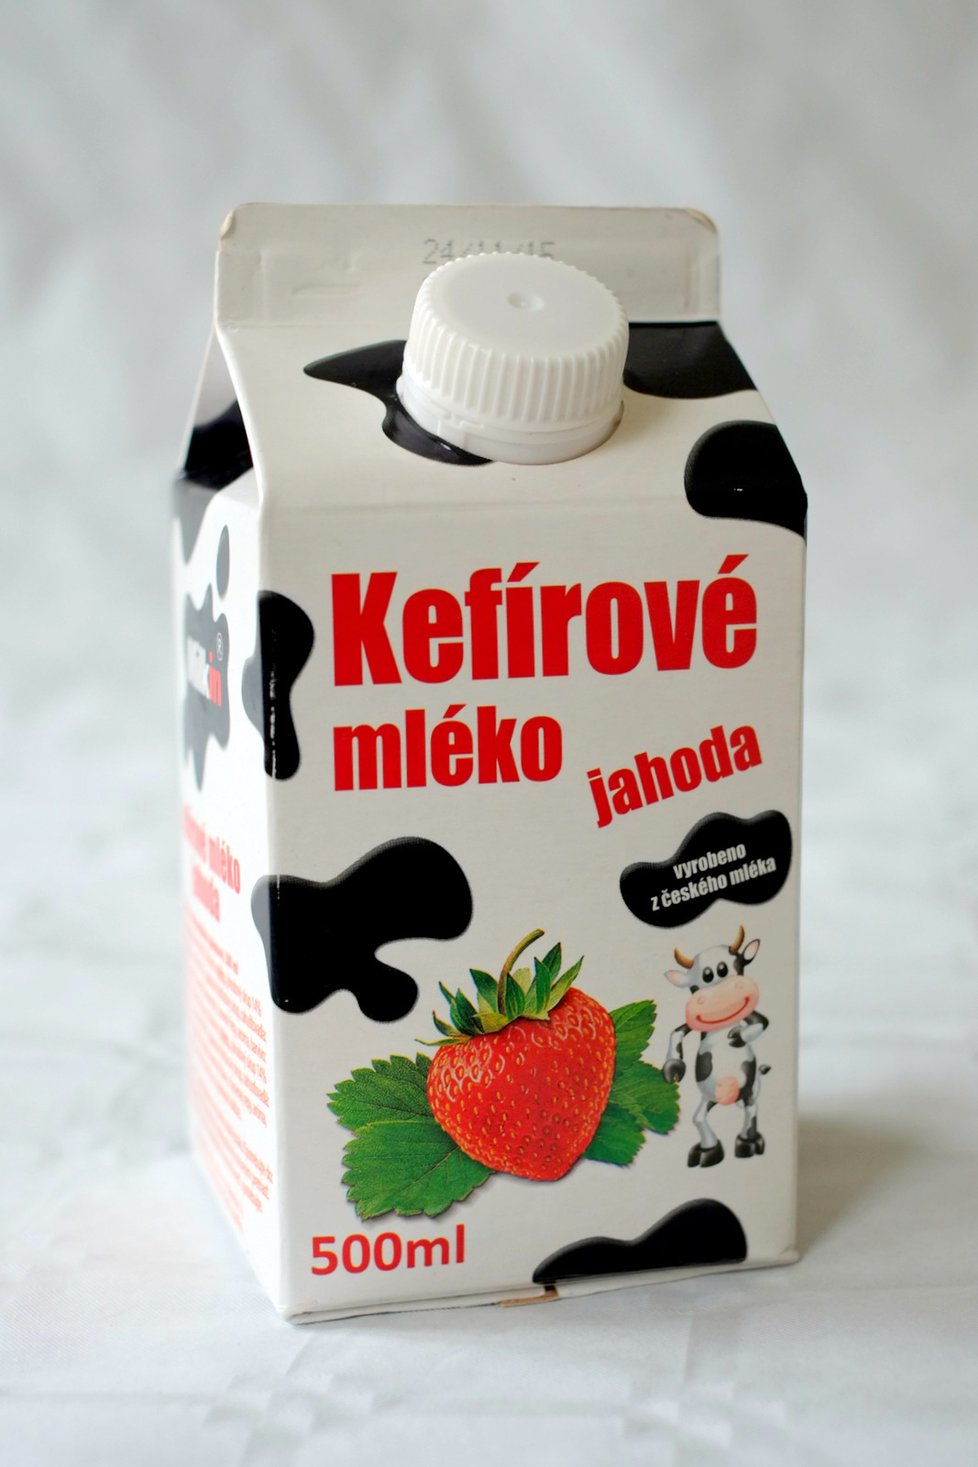 Kefírové mléko Milkin jahoda